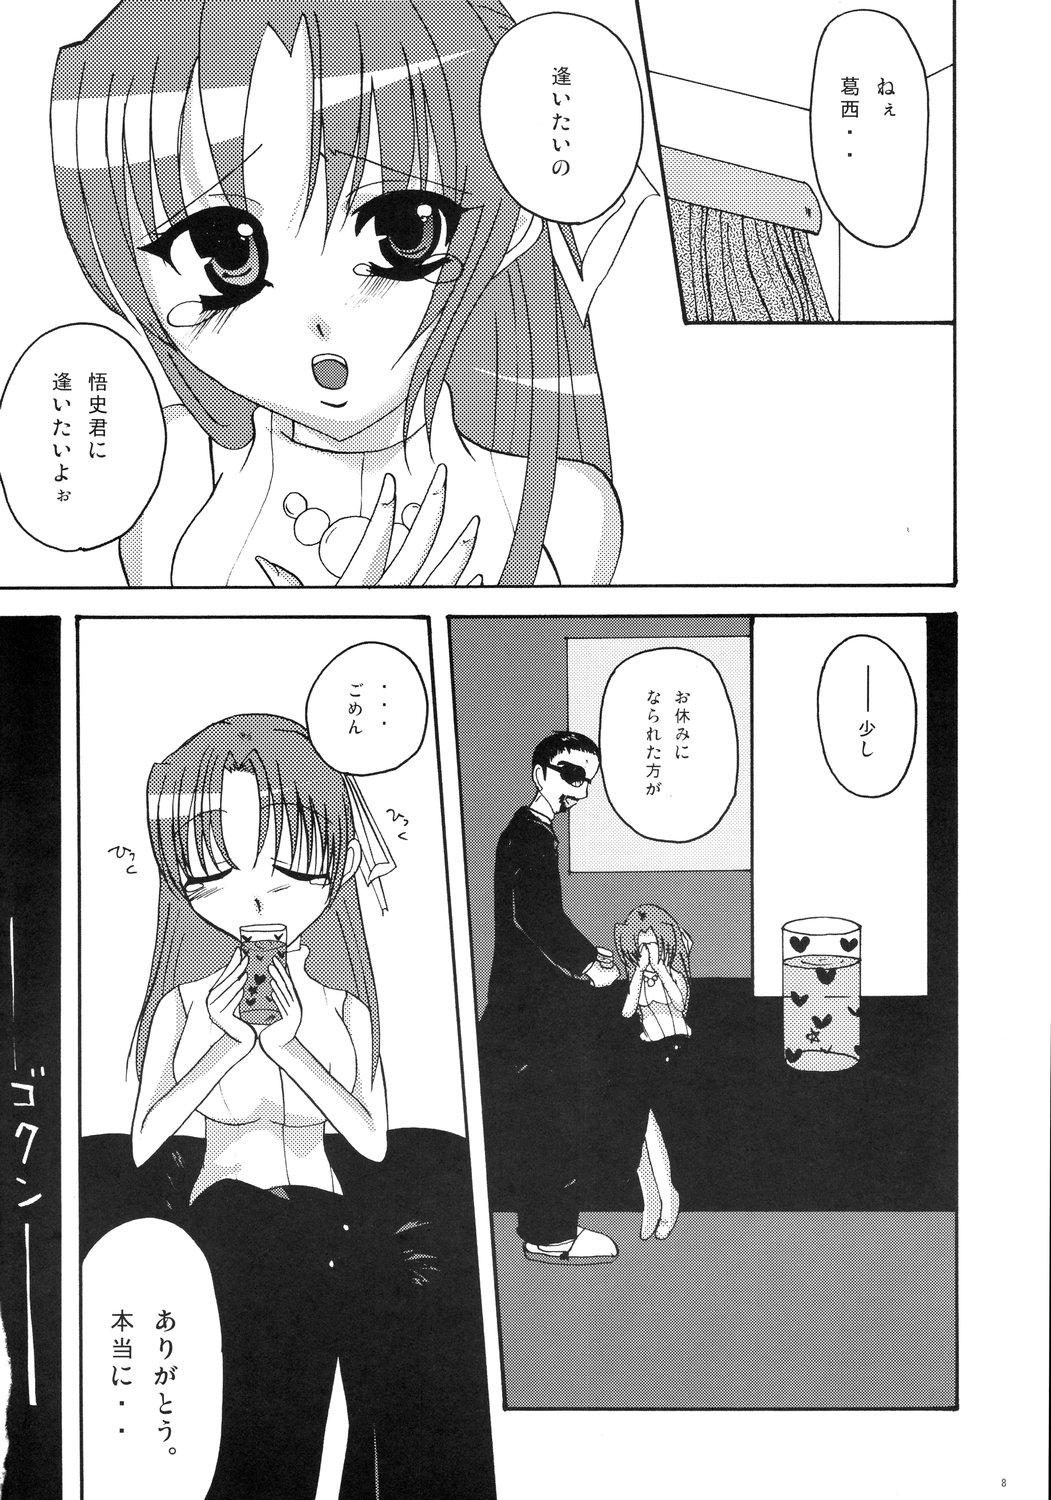 Mamando Kiss Rock - Higurashi no naku koro ni Gays - Page 8